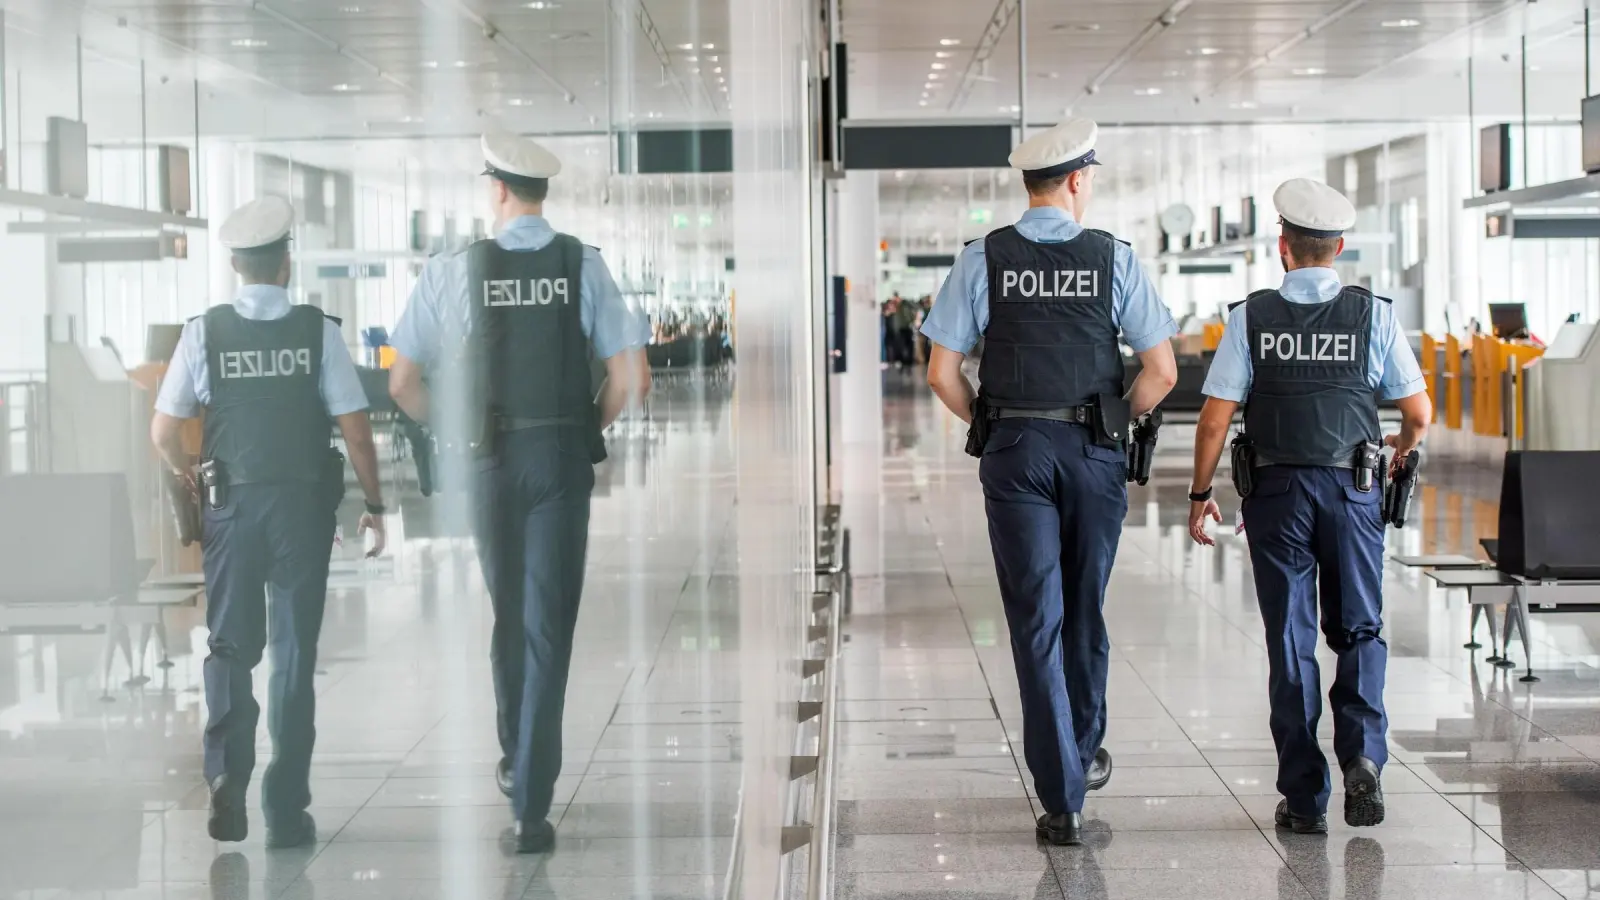 Beamte am Airport müssen teilweise auch äußerst unangenehme Szenen souverän meistern. (Foto: Bundespolizei)